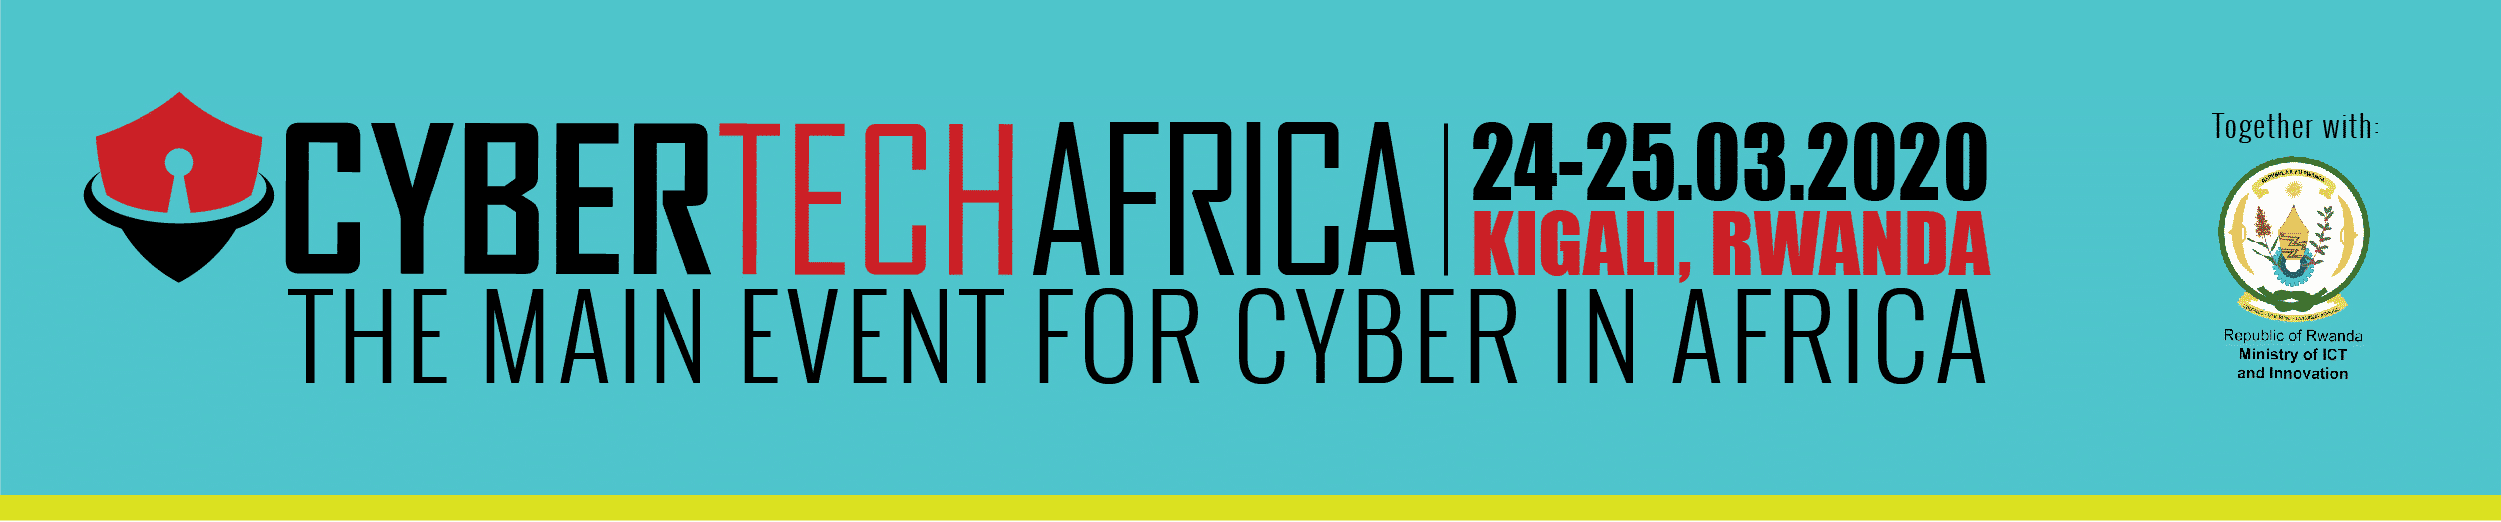 Cybertech Africa